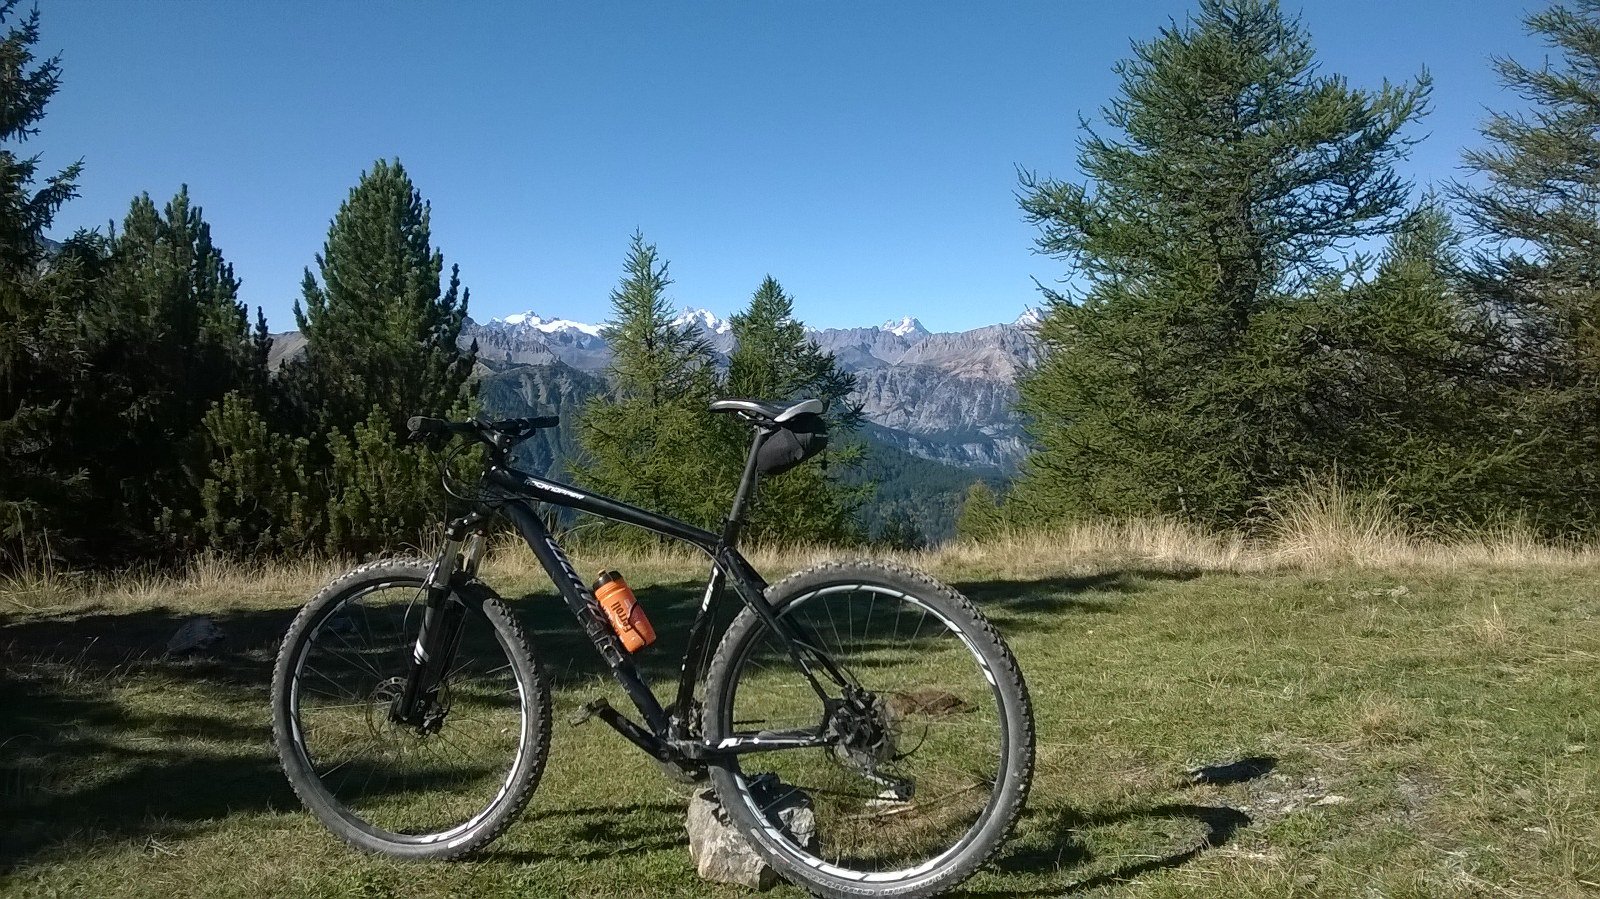 Montagne e bici, due passioni